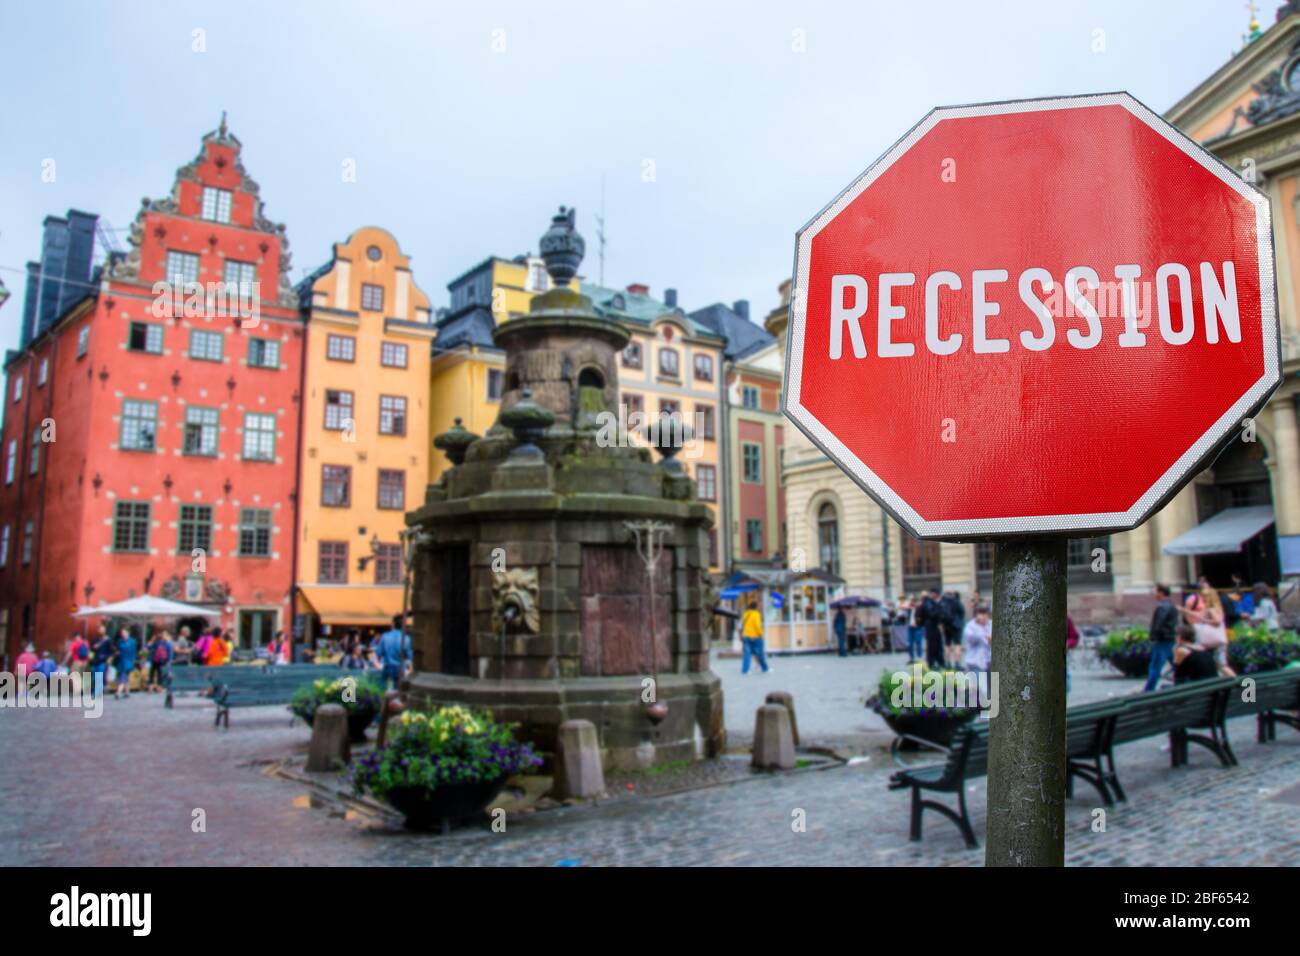 Rückschlagschild mit Blick auf alte Schlepptafel in Stockholm, Schweden. Finanzcrash in der Weltwirtschaft wegen der Coronavirus-Pandemie. Stockfoto